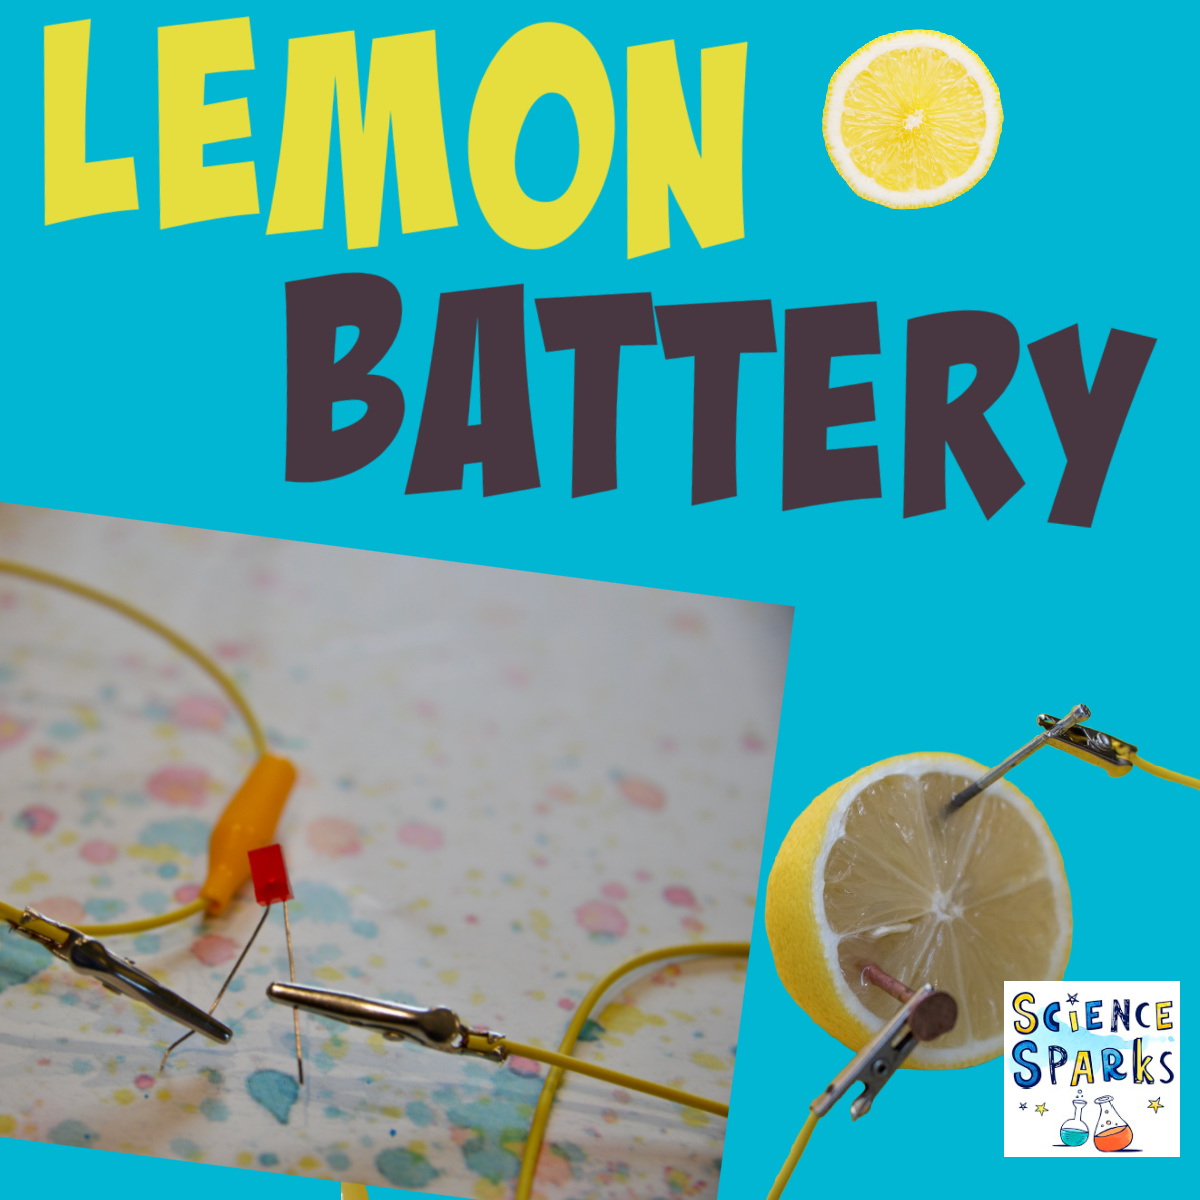 Lemon Battery circuits. 